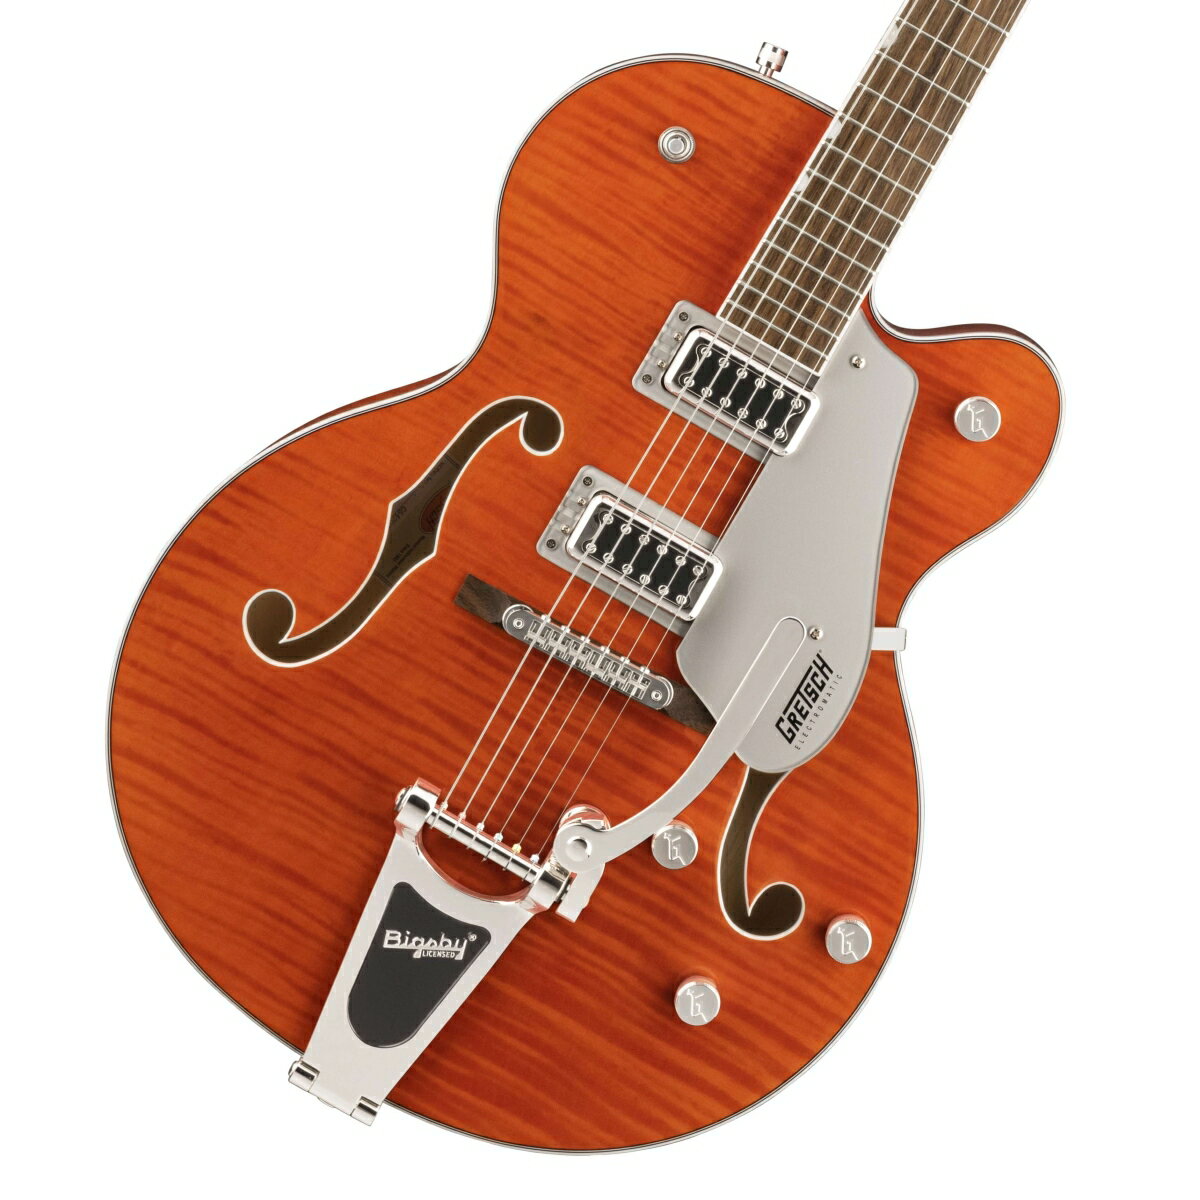 限定モデル！フレイム・メイプルトップのG5427TFMが大特価にて入荷！ 限定生産FSR仕様のG5427TFMが特価にて入荷！美しいフレイム・メイプルをボディトップに使用しております。 6120でお馴染みの王道Orange Stainカラーと相まって美しいギターに仕上がっております。 クラシックな'50年代や60年代のGretschサウンドとスタイルにインスパイアを受けた、Electromatic Classic Hollow Bodyギターです。 定番のGretschホロウボディが響かせるサウンド、スタイル、そしてプレイアビリティを備えたこのモデルはネクストレベルを目指すギタリストに最適です。 ヴィンテージにインスパイアされた洗練されたアーチを備えたラミネートメイプルボディと、不要なフィードバックノイズを軽減する全く新しいトレッスルブロックブレース設計を採用しています。 ボディトップとバックの間に強度の高い接着を施した、新しいトレッスルブロック設計は、より的確でスナップの効いたトーン、より伸びやかでスピーディなレスポンスで攻撃力の高いサウンドをもたらします。 全く新しいFT-5E Filter?Tronピックアップと相まって、このホロウボディサウンドは強力なフルボディパンチを放ち、クラシカルな煌びやかさと増強された存在感、明瞭で正確なプレイを加速させます。 全く新しいClassic"C"シェイプのメイプルネックは、プレイアビリティとパフォーマンスを向上させ、快適な演奏感をもたらす、12インチラジアスのローレル指板を備えています。 生き生きとした響きを提供するG5427Tは、トレブルブリードサーキットとマスターボリュームを含む、様々なアップグレードを施されたコントロール部を持ち、 マスタートーン、個々のピックアップボリュームコントロールと3ポジションピックアップトグルスイッチ、特大のバウンドFホール、マルチプライボディバインディング、バインディング加工された50年代後半の小ぶりなG6120バウンドヘッドストック、ヴィンテージスタイルのオープンバックチューニングマシン、Graph Tech NuBoneナット、パーロイドのNeo-Classicサムネイルインレイ、安定したAdjusto-Maticブリッジ、Bigsby B60ヴィブラートテールピースを備えています。 付属品：ソフトケース、メーカー保証書 製品仕様 Body Hollow Body with Trestle Block Bracing with Oversized Bound F HolesBody Top Arched Laminated Flame MapleNeck MapleFret Size Medium JumboScale 24.6" &#40;625 mm&#41;Shape Classic C NeckFingerboard LaurelPickup 2 FT-5E Filter’TronBridge Secured Adjusto-Matic BridgeTailpiece Bigsby B60G Tailpiece